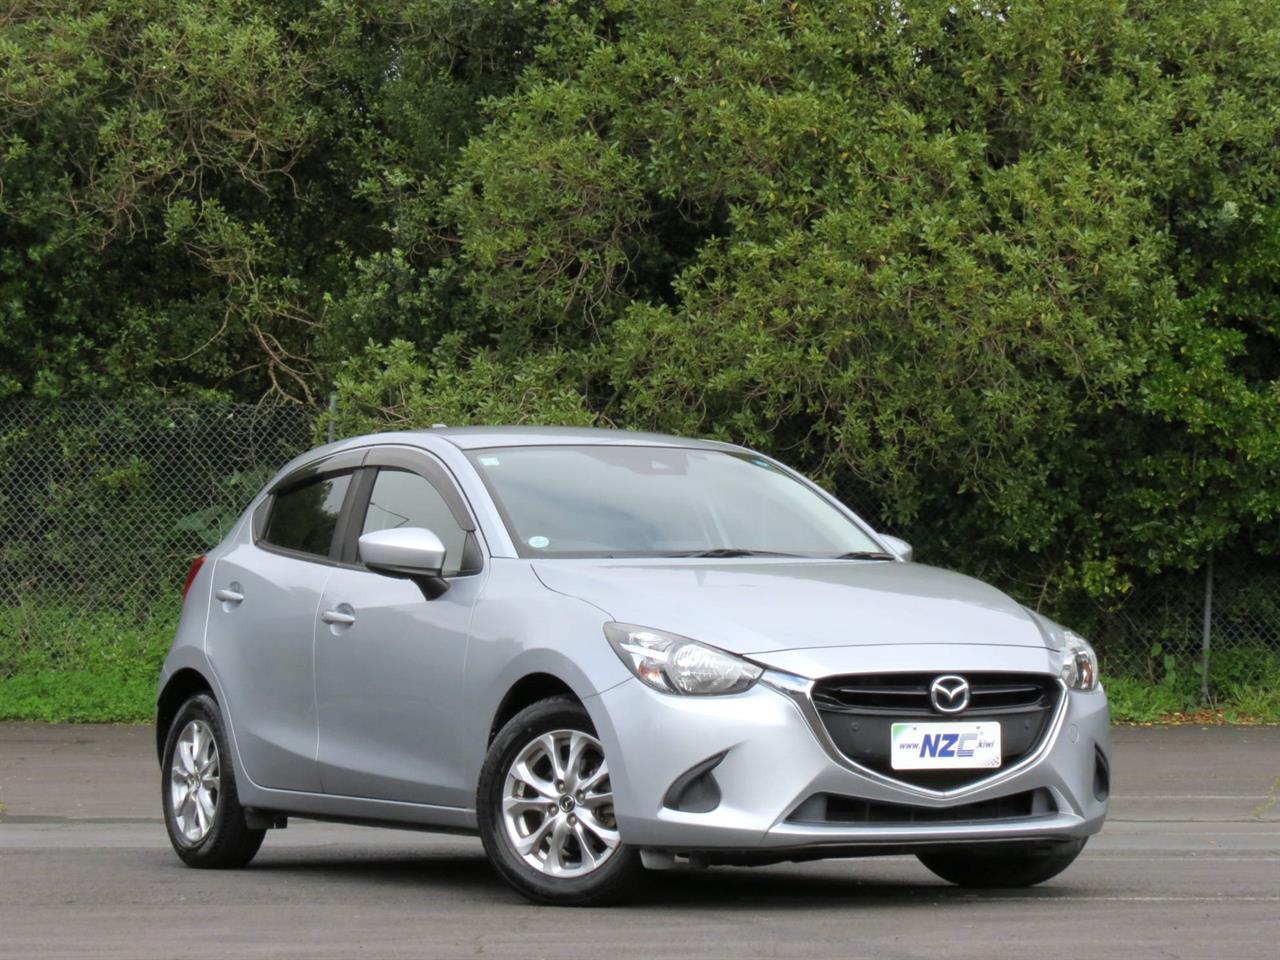 NZC best hot price for 2018 Mazda Demio in Auckland